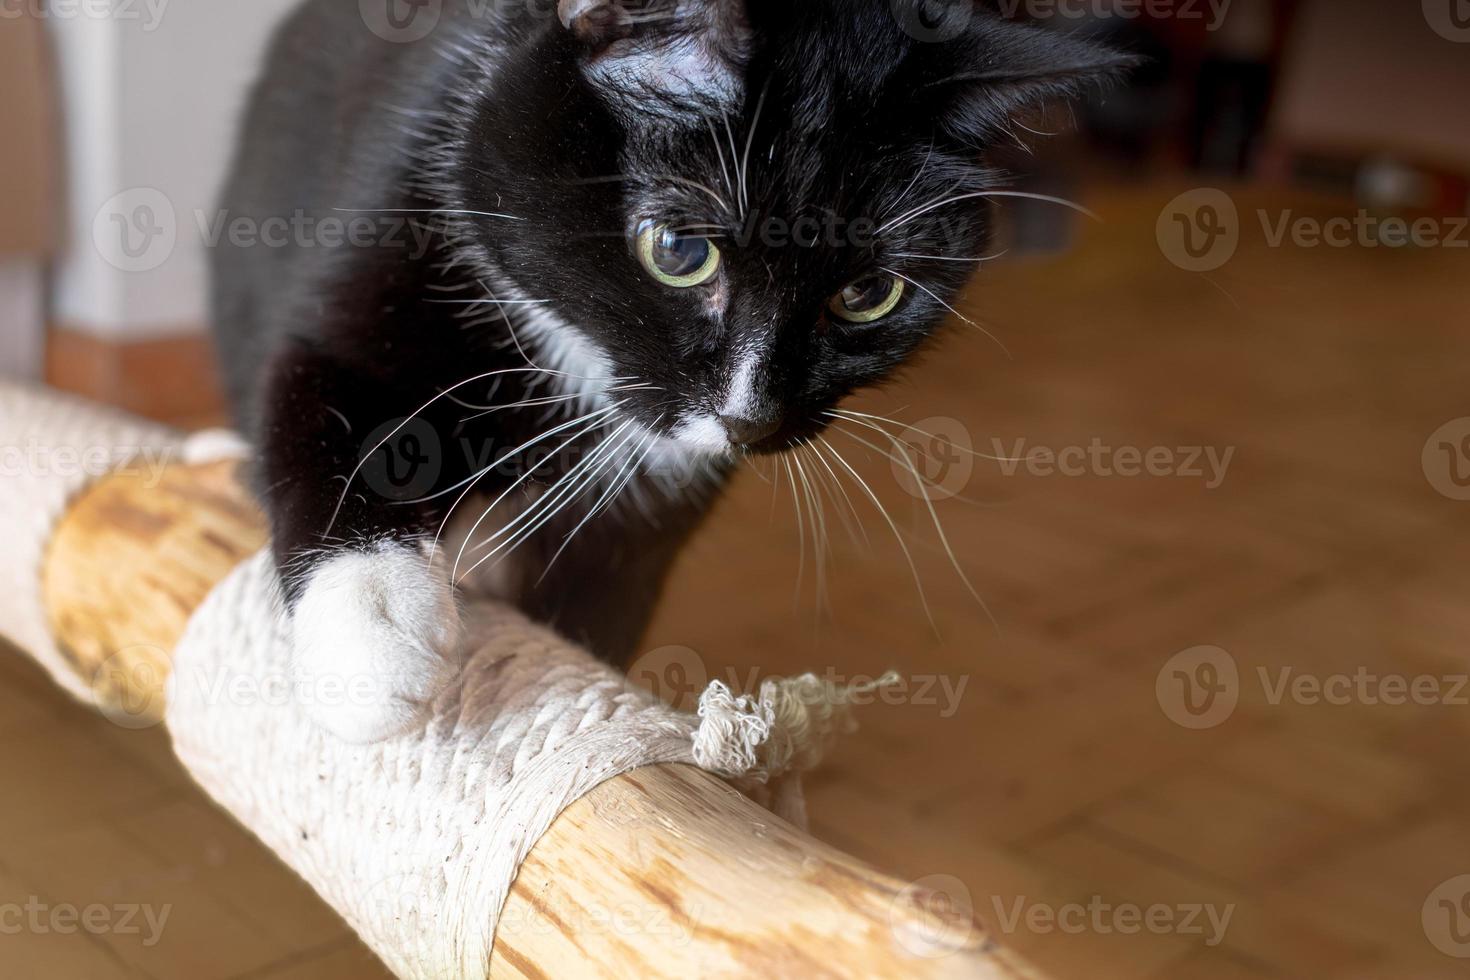 inhemsk svart katt entusiastiskt inspekterande provisorisk katt träd liggande på golv på Hem. foto